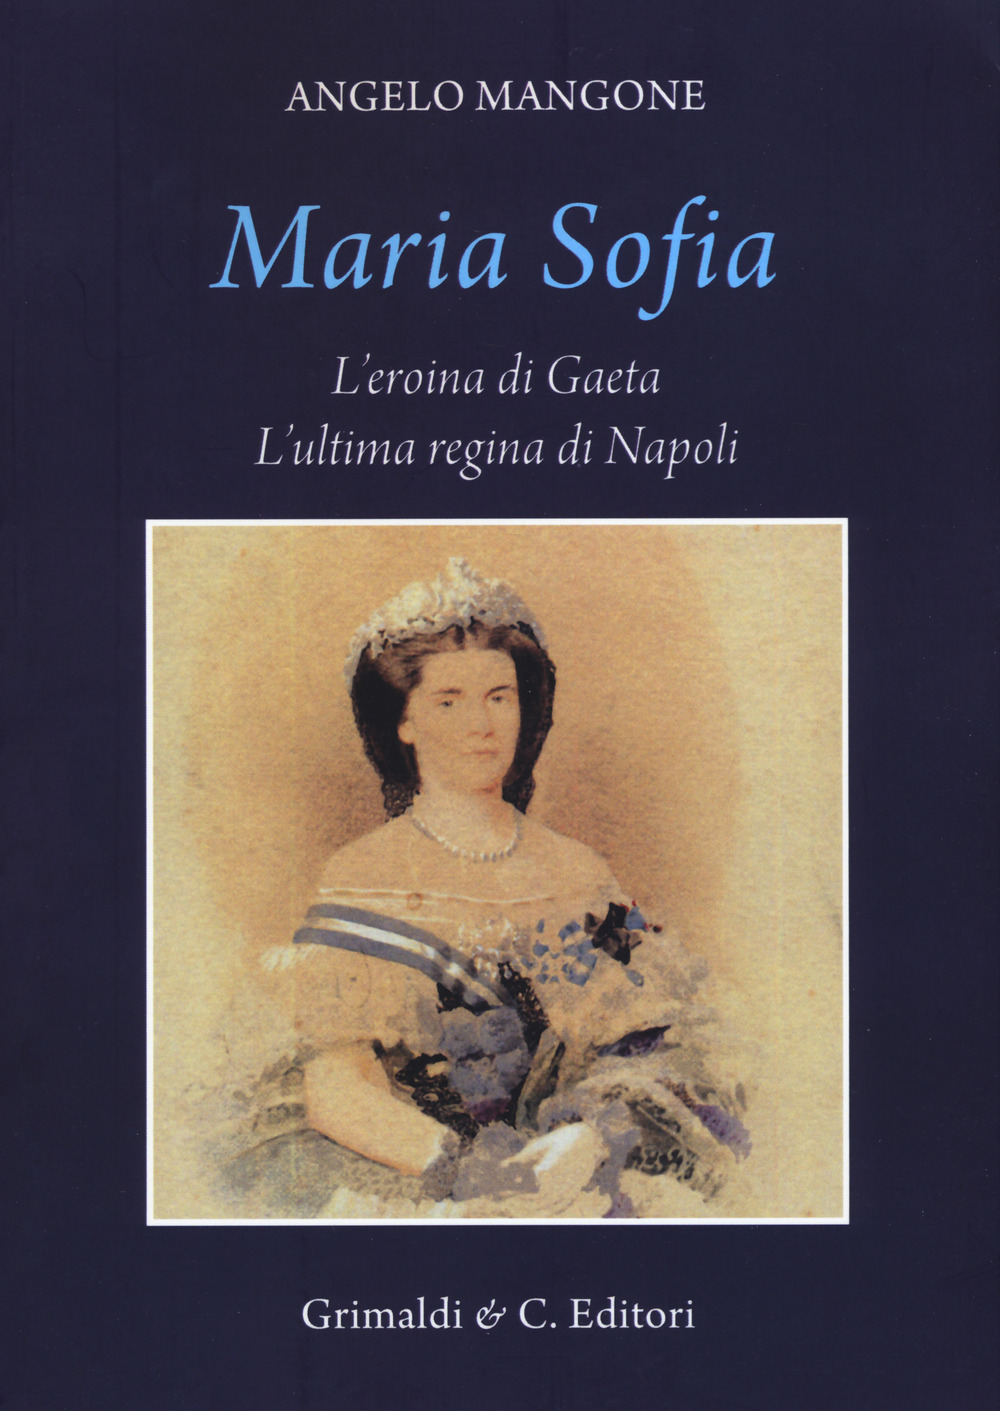 Maria Sofia. L'eroina di Gaeta, ultima regina di Napoli